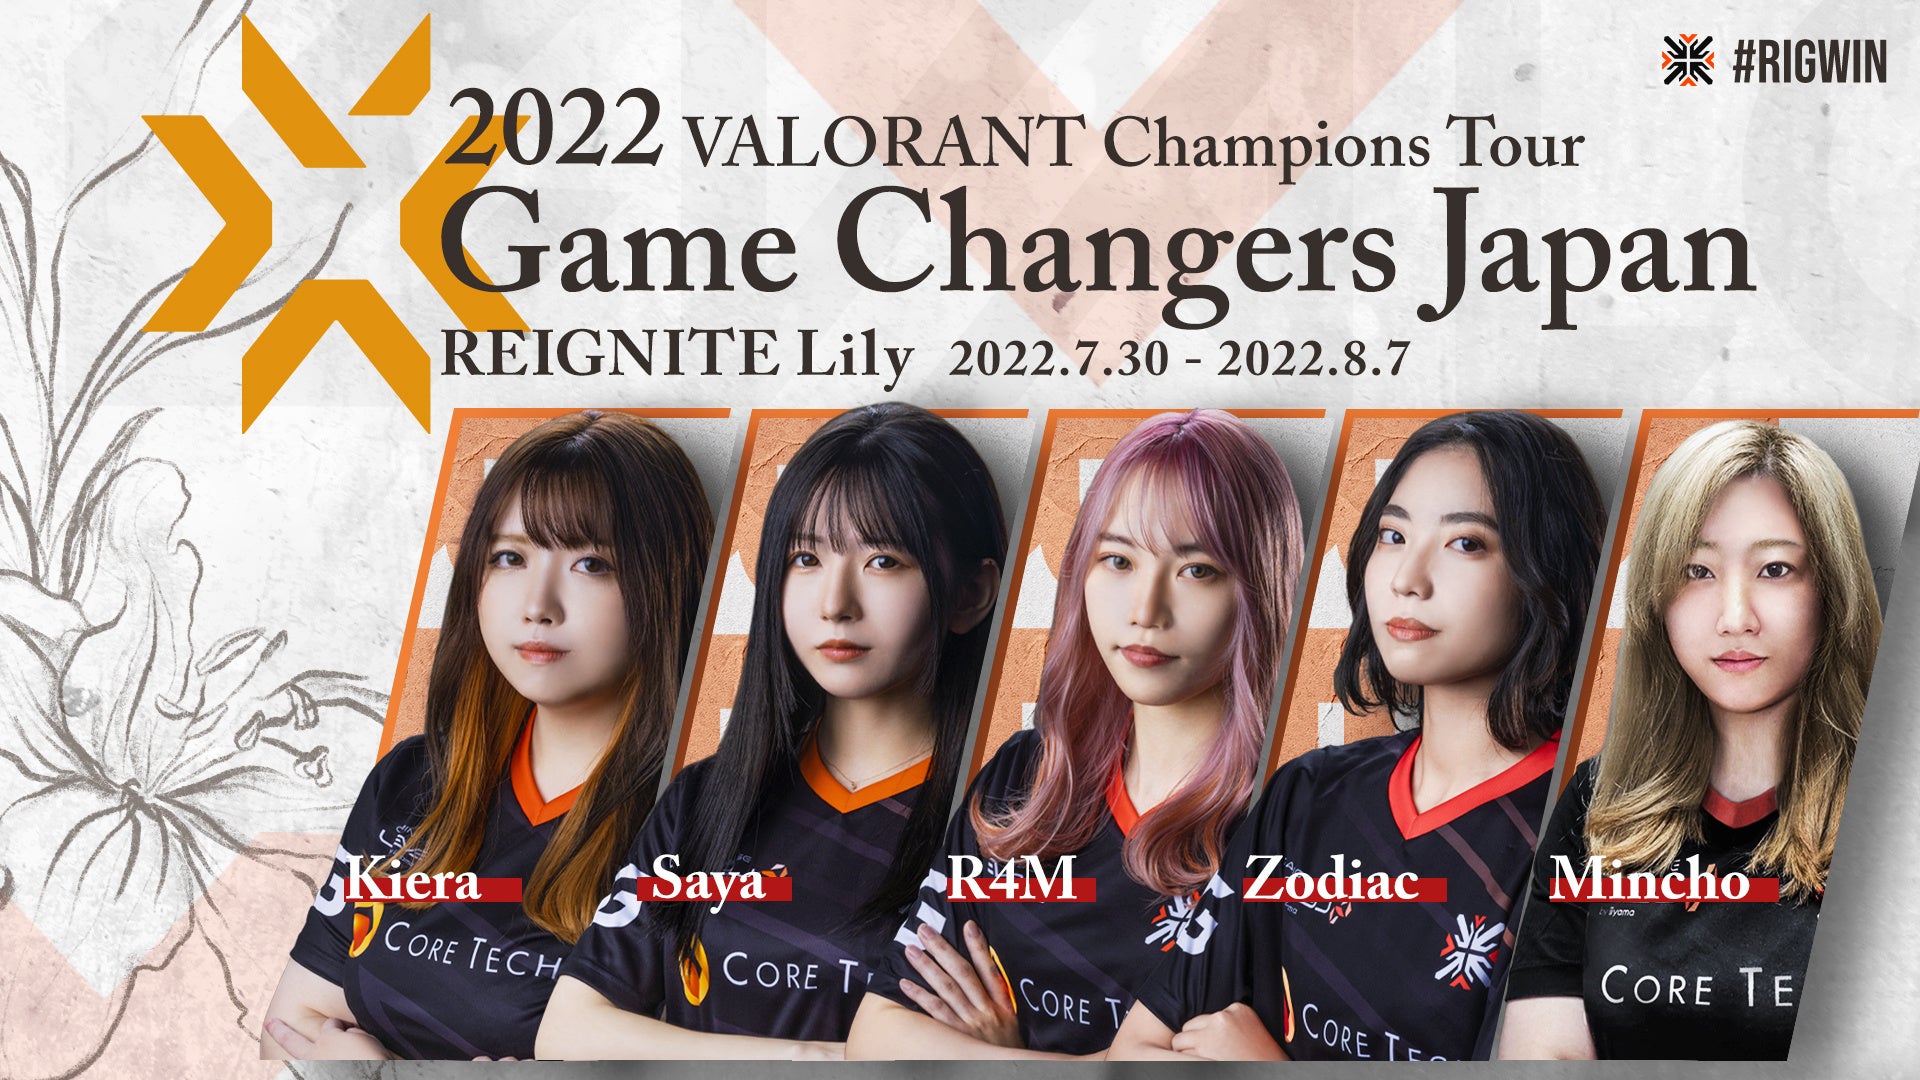 プロeスポーツチーム「Reignite」の女性VALORANT部門「REIGNITE Lily」が、「VALORANT CHAMPIONS TOUR GAME CHANGERS JAPAN」に出場決定